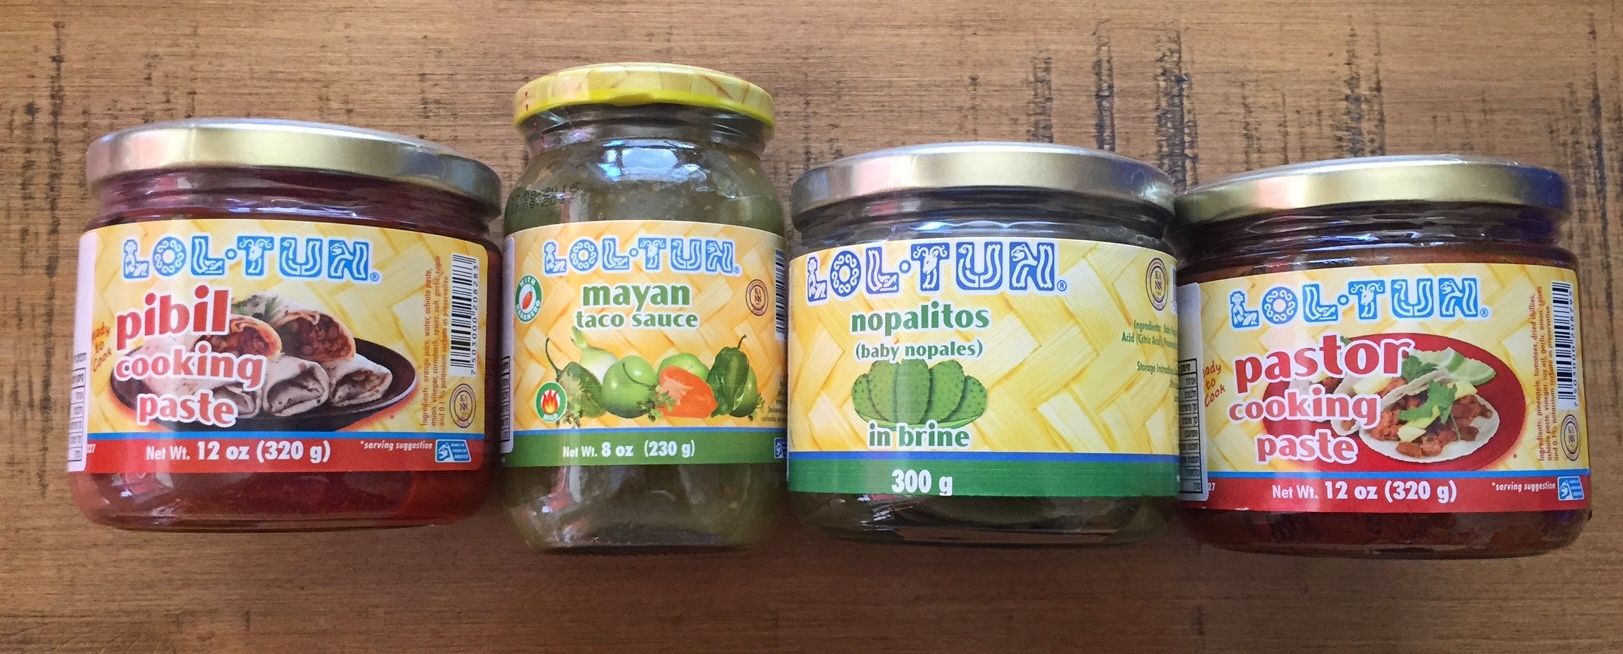 סדרת מוצרים חדשה של Loltun המקסיקנית, ביניהם סלסה של עגבניות ירוקות לטאקו, מרינדת אדובו, מרינדת פאסטור לצלייה ובישול, ועלי קקטוס כבושים רכים